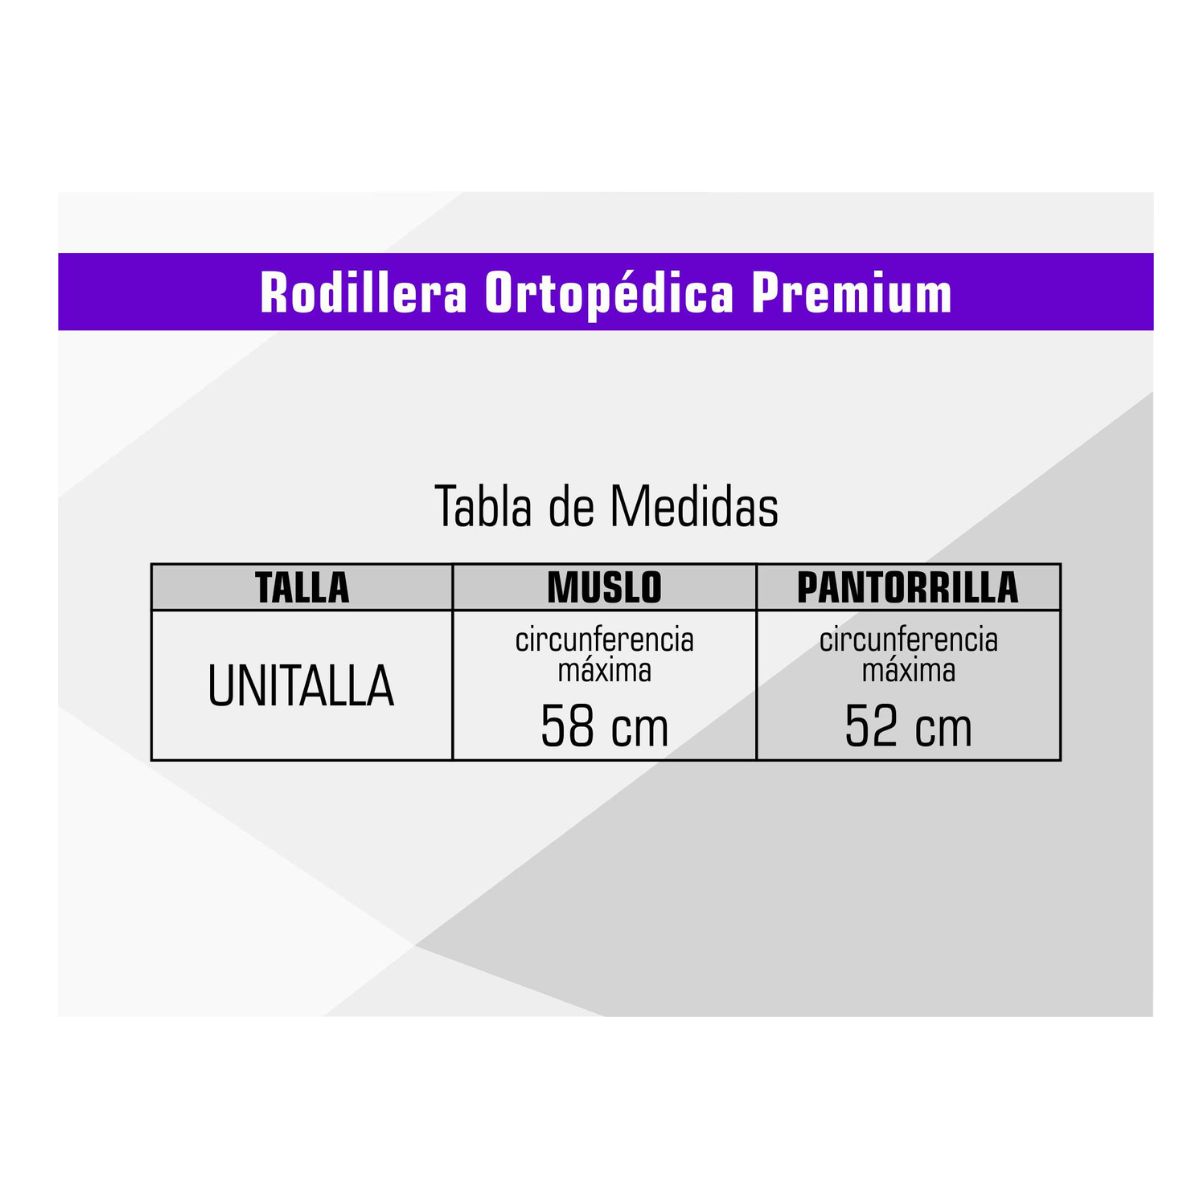 Rodillera Ortopédica Premium